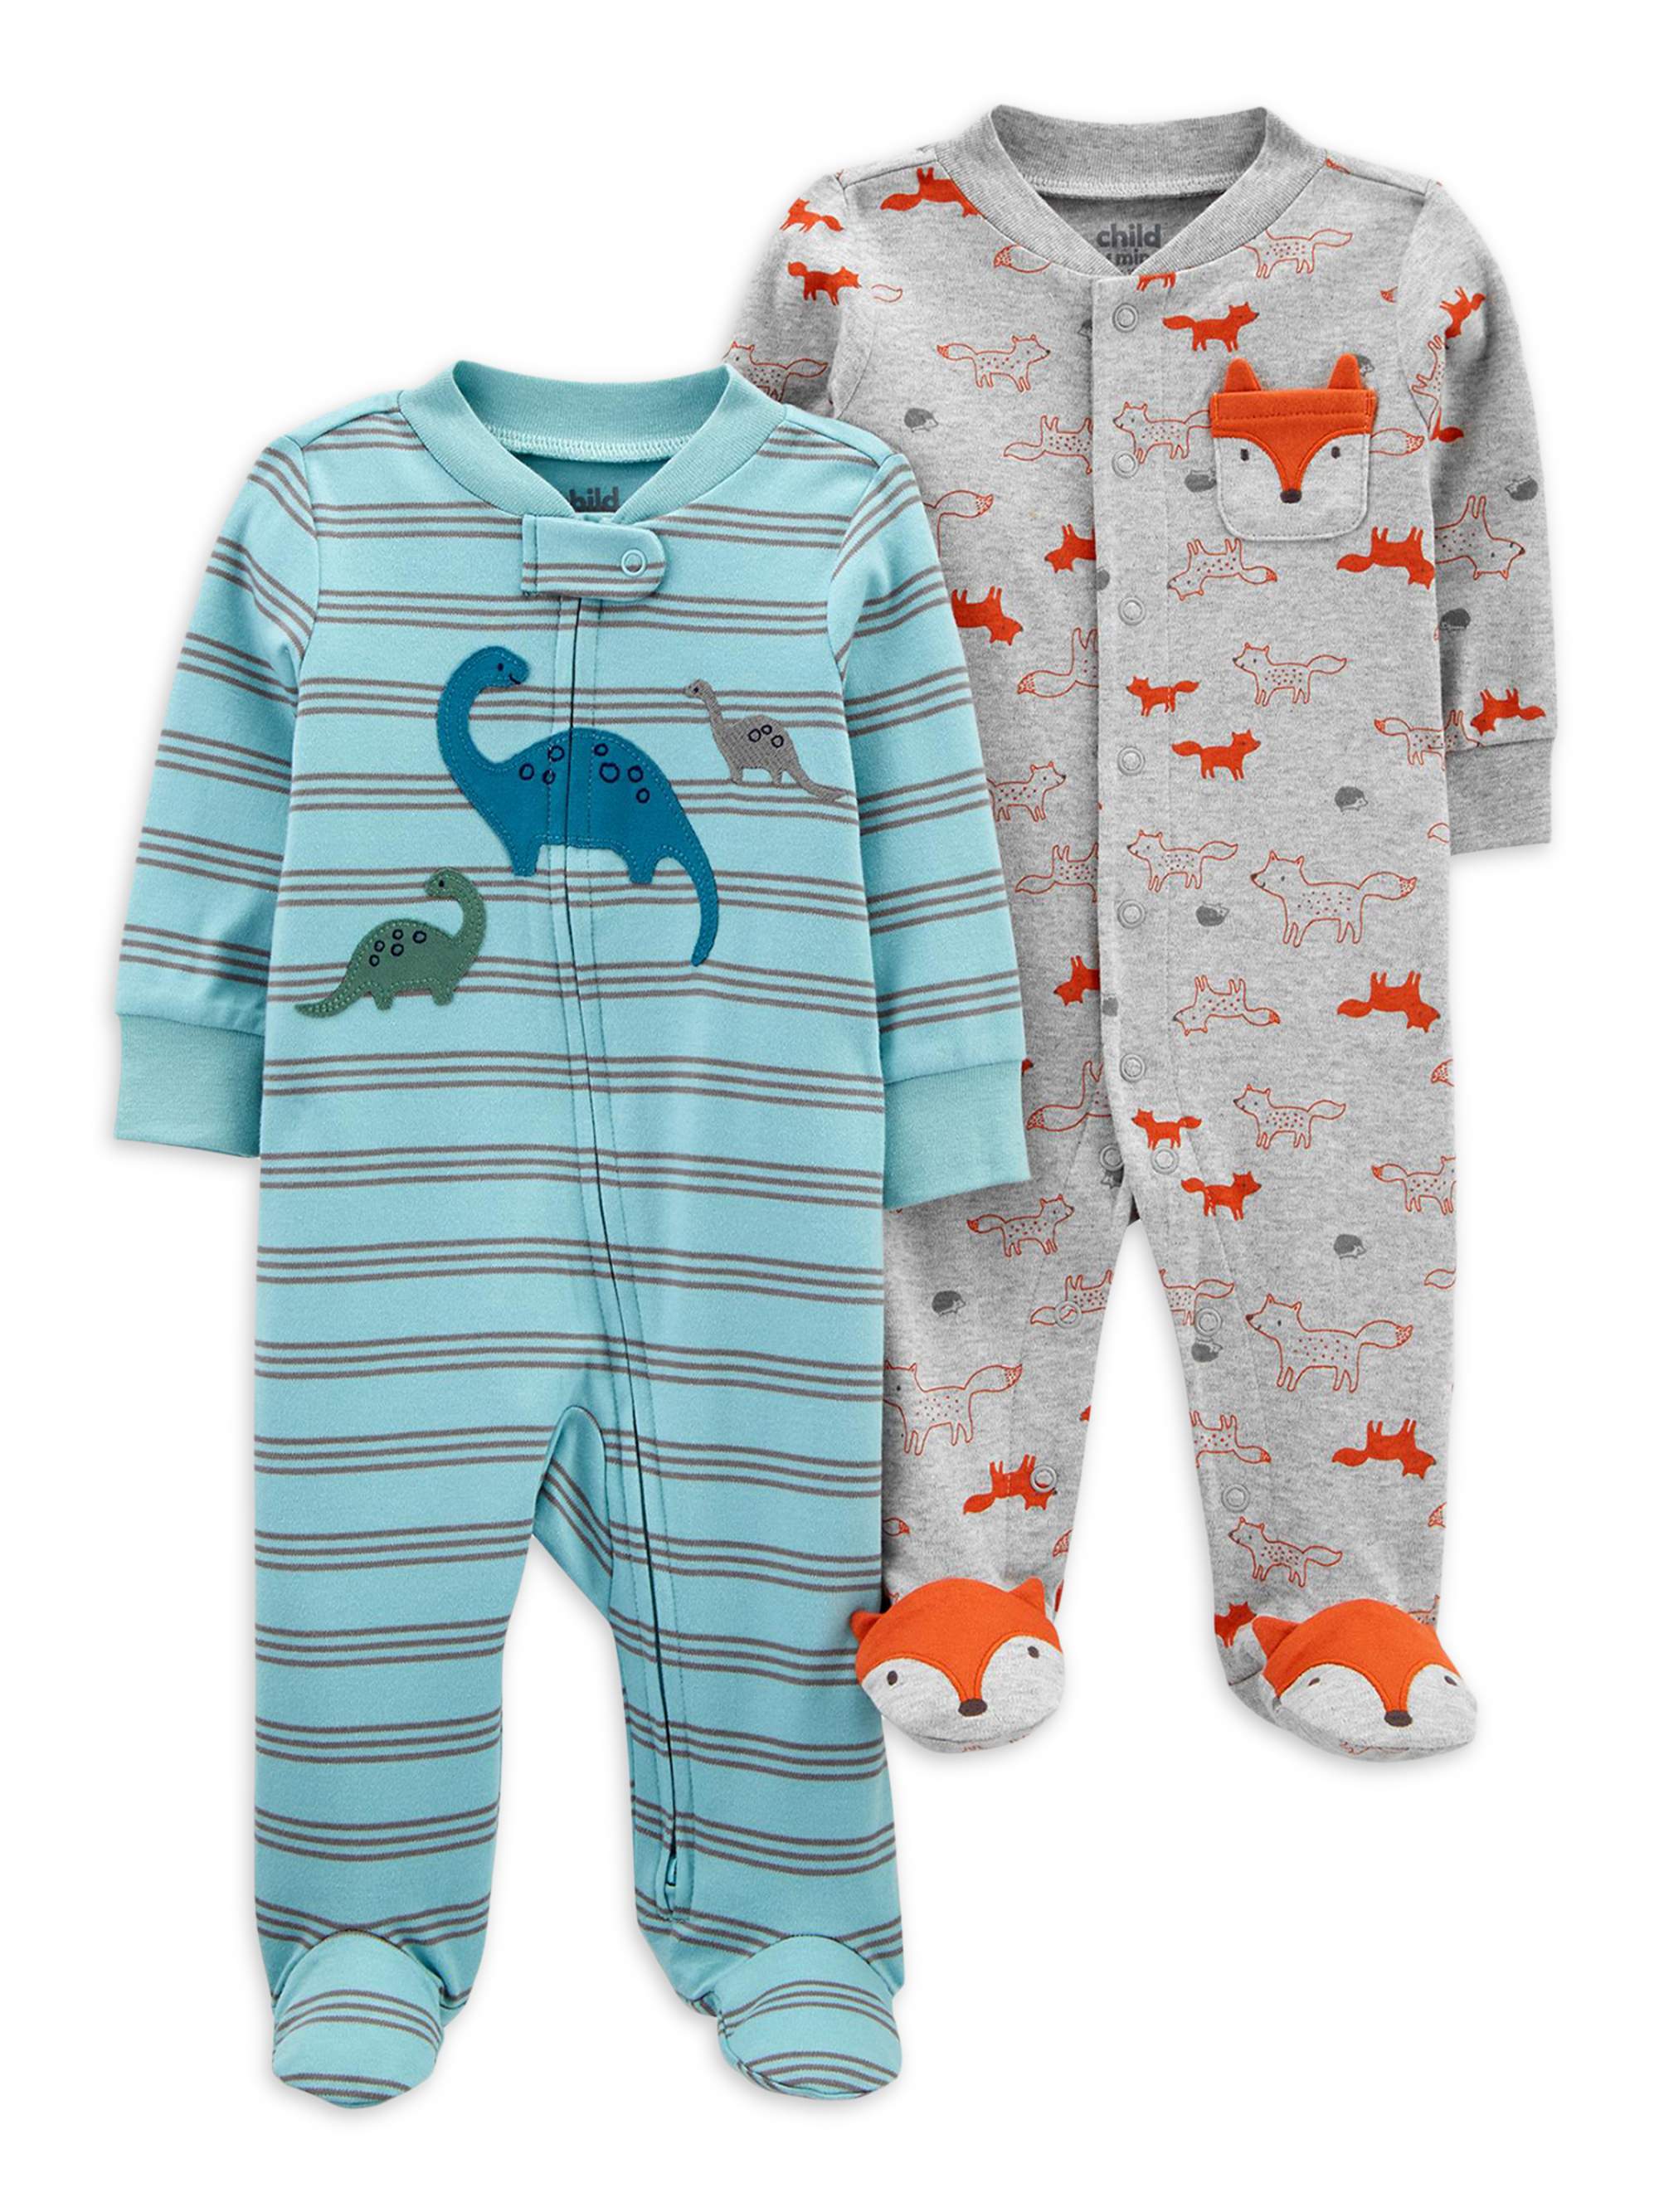 Carter's Child of Mine Baby Boys Interlock Cotton Sleep 'N Play Pajamas, 2-Pack (Preemie-9M) - image 1 of 1